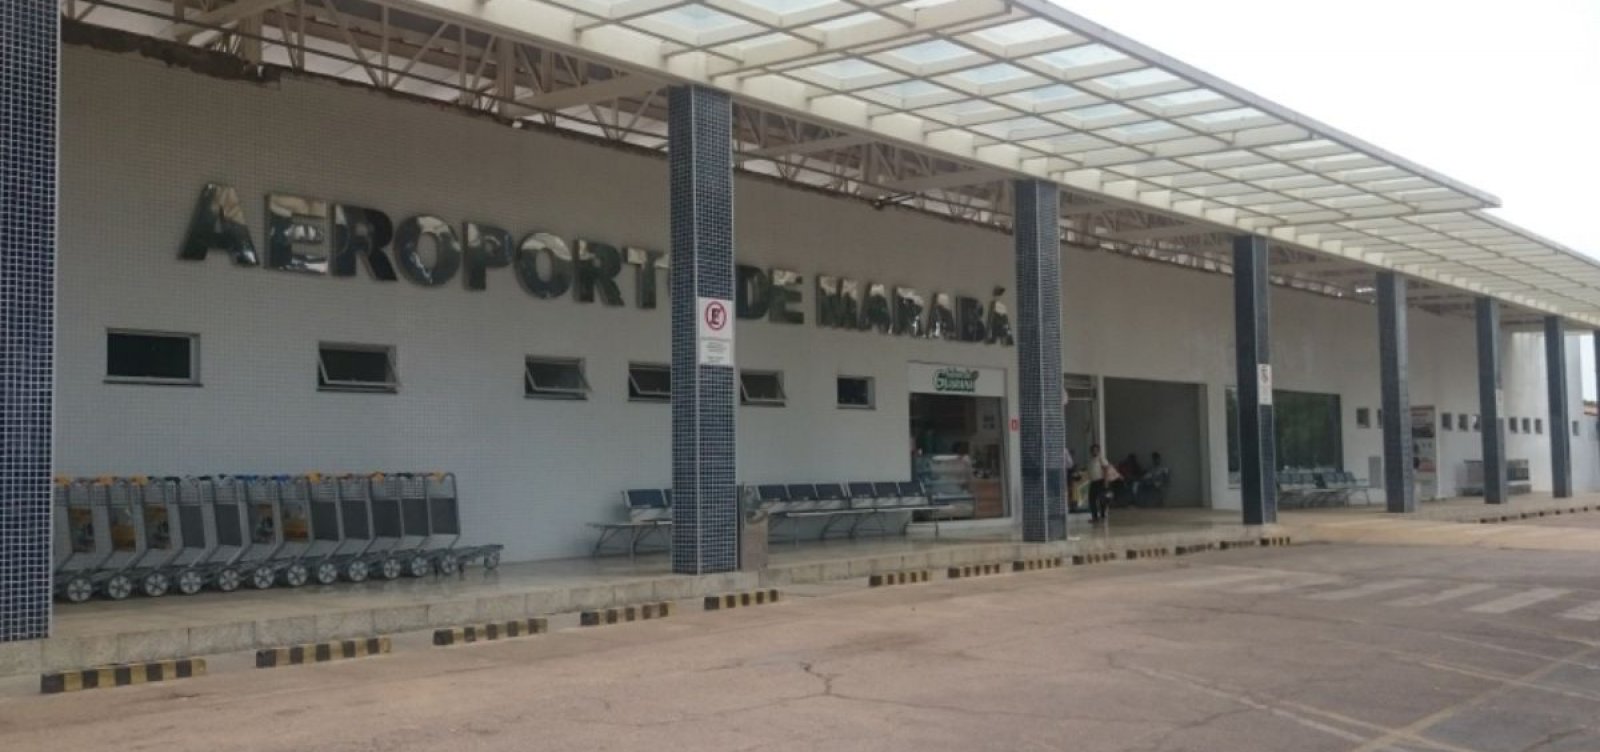 Explosão em aeroporto do Pará deixa um morto e dois feridos